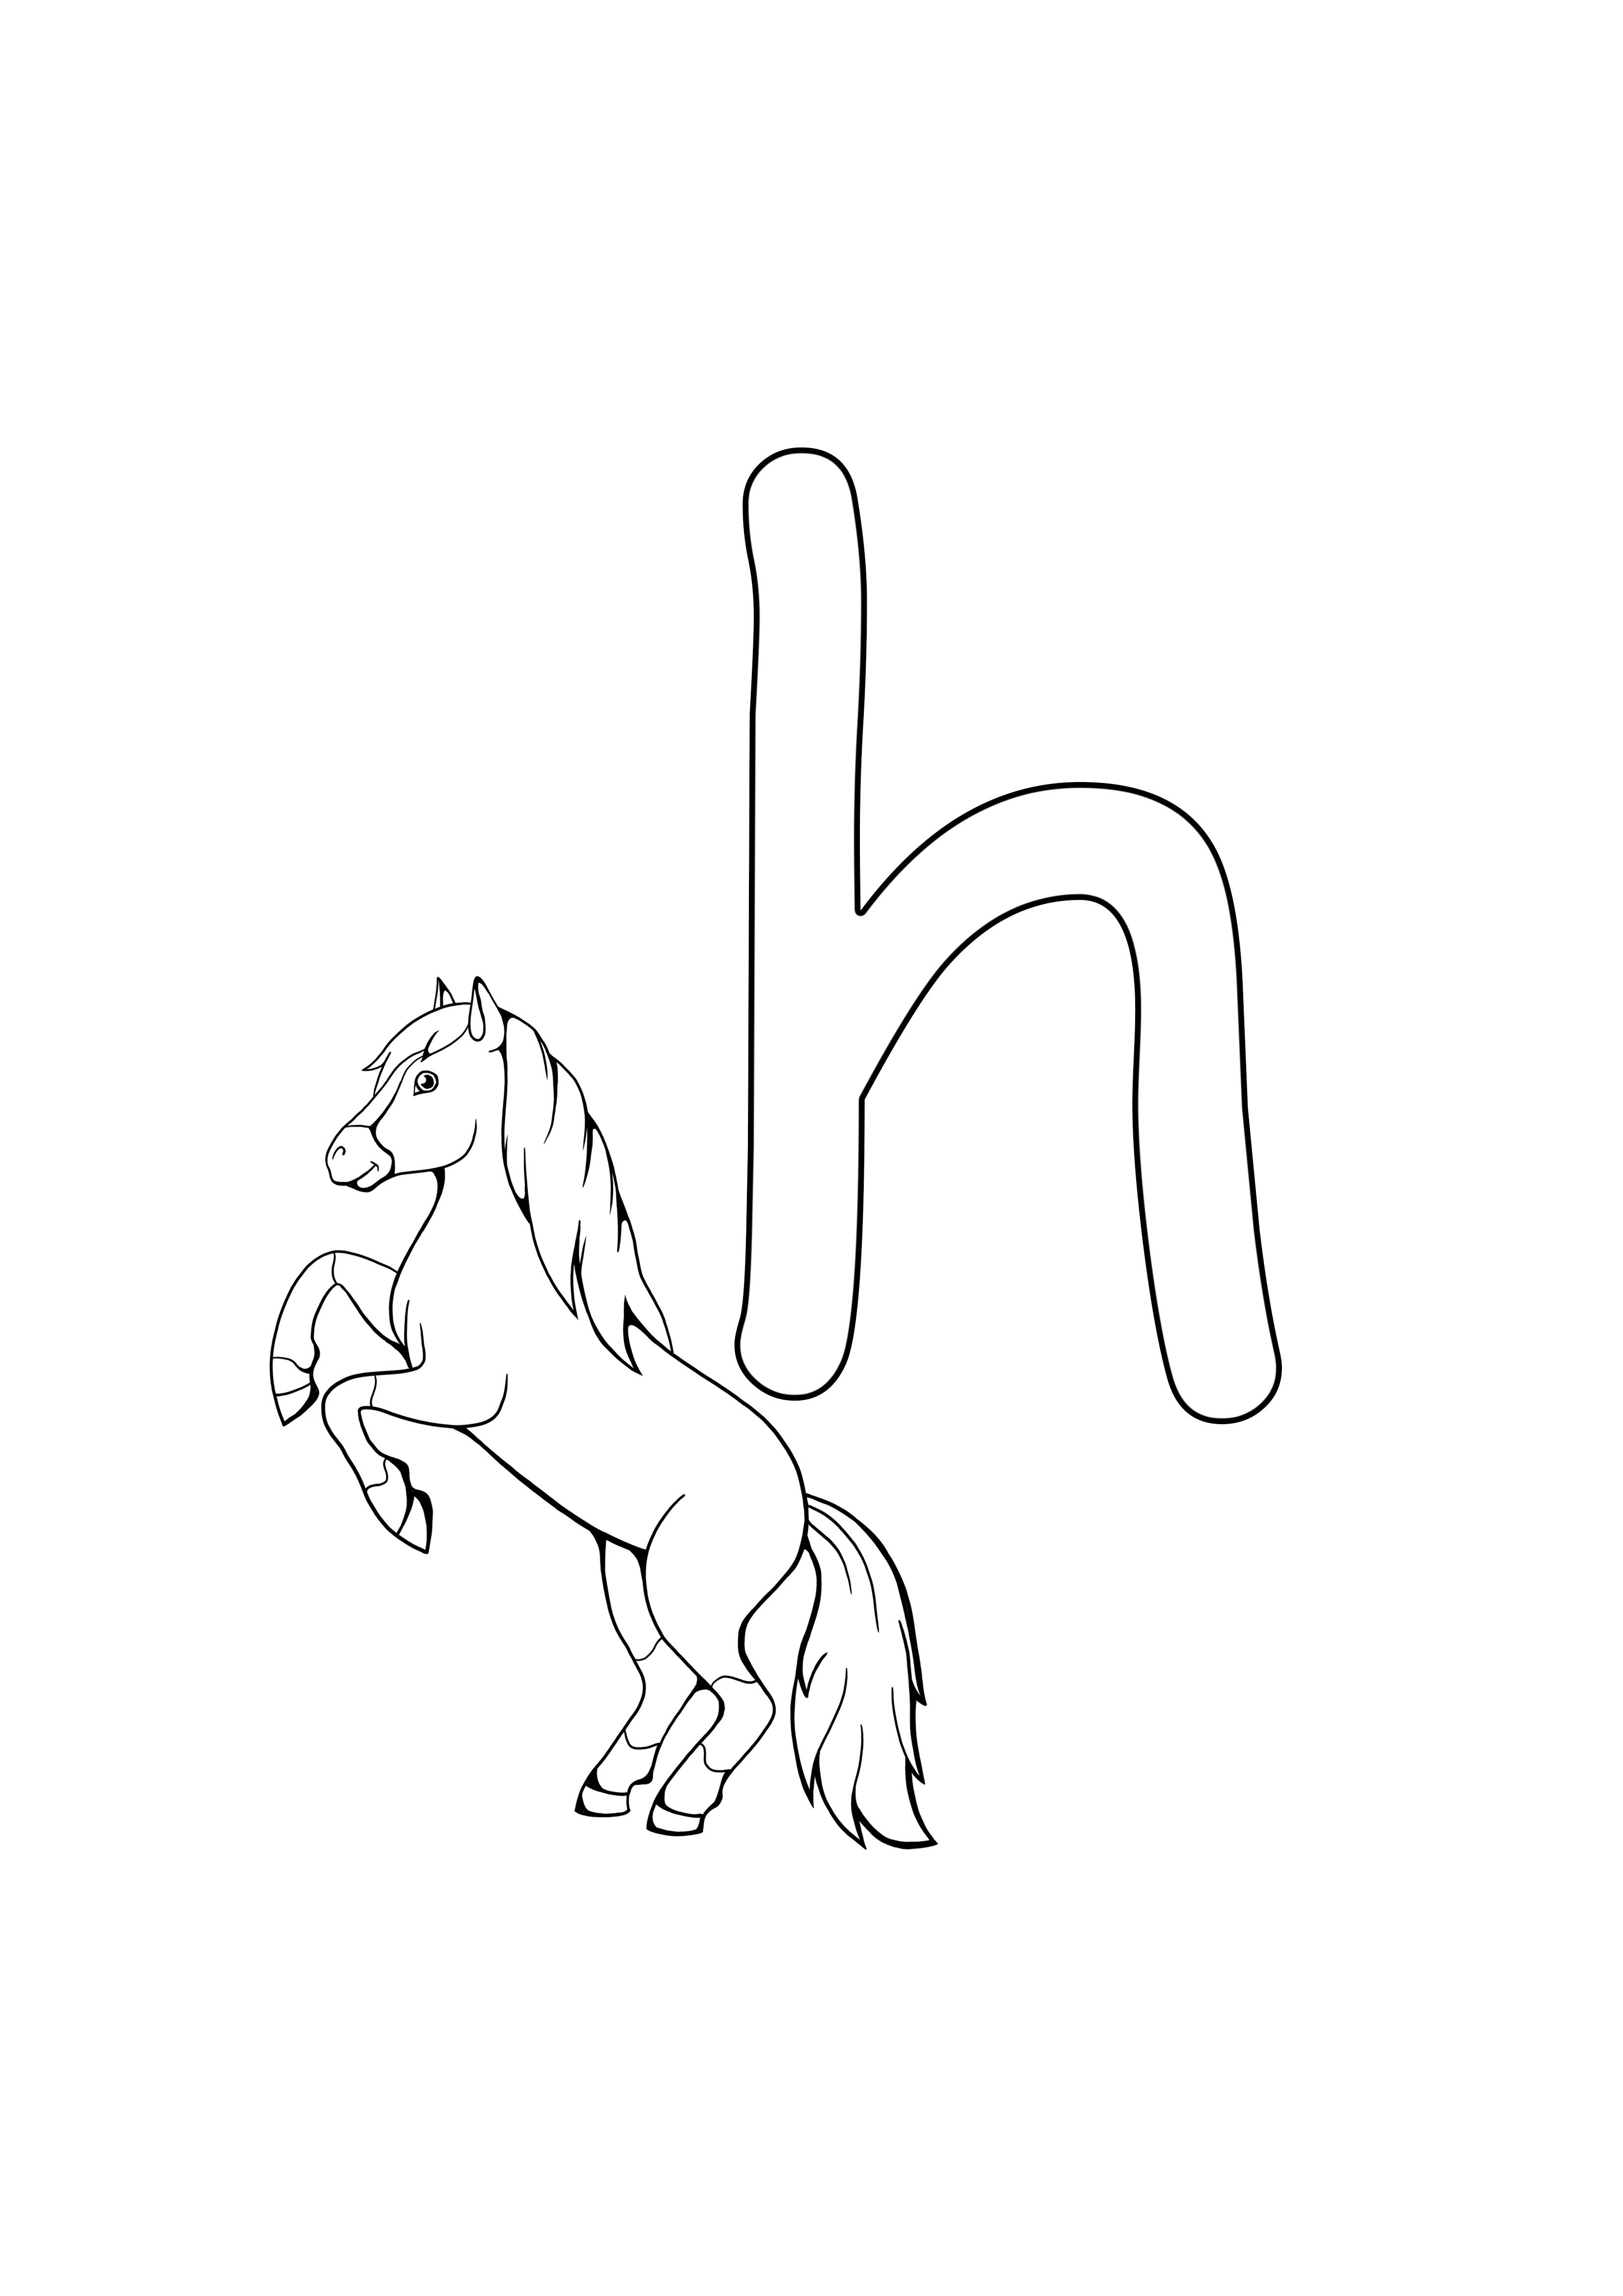 h at harfi basımı ve ücretsiz boyama içindir